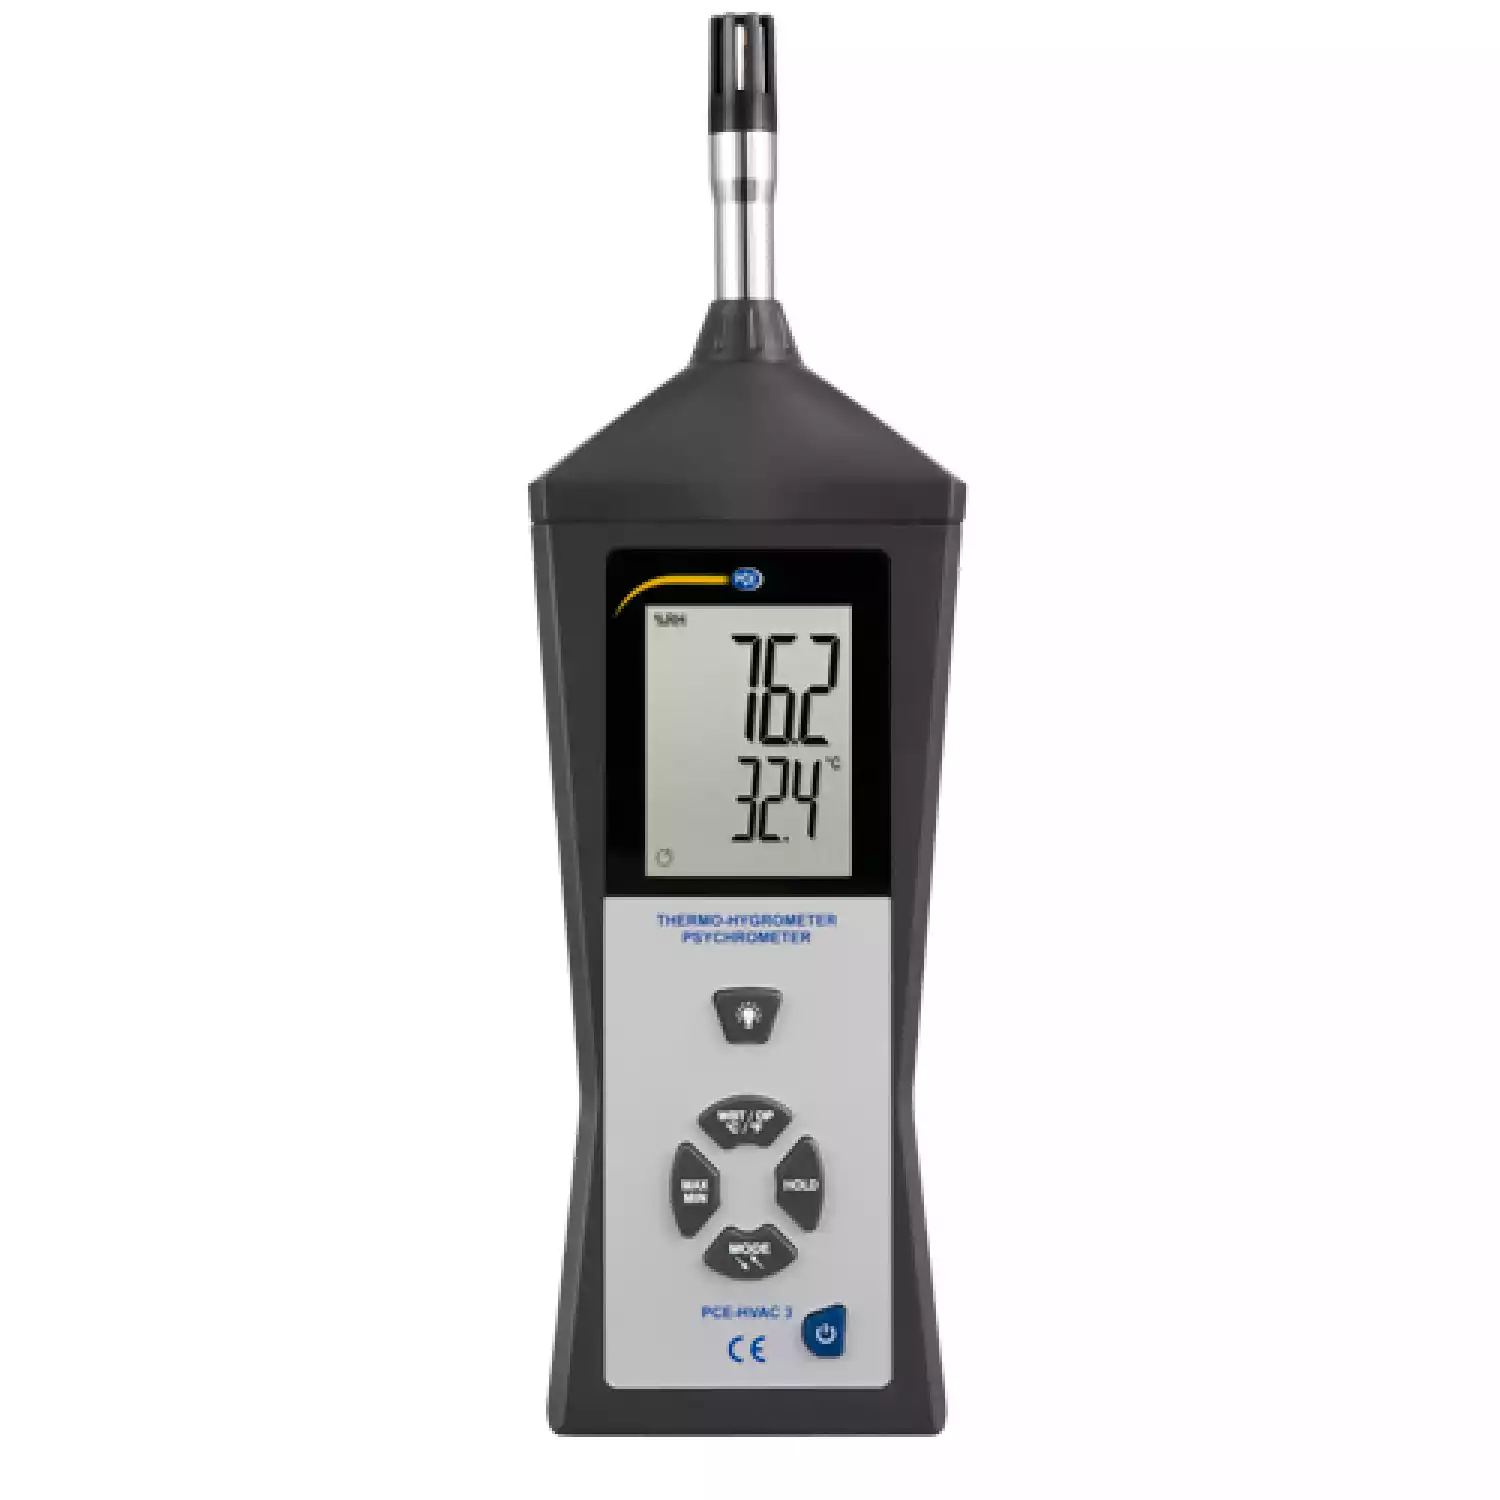 Многофункциональный термометр PCE-HVAC 3 - 1